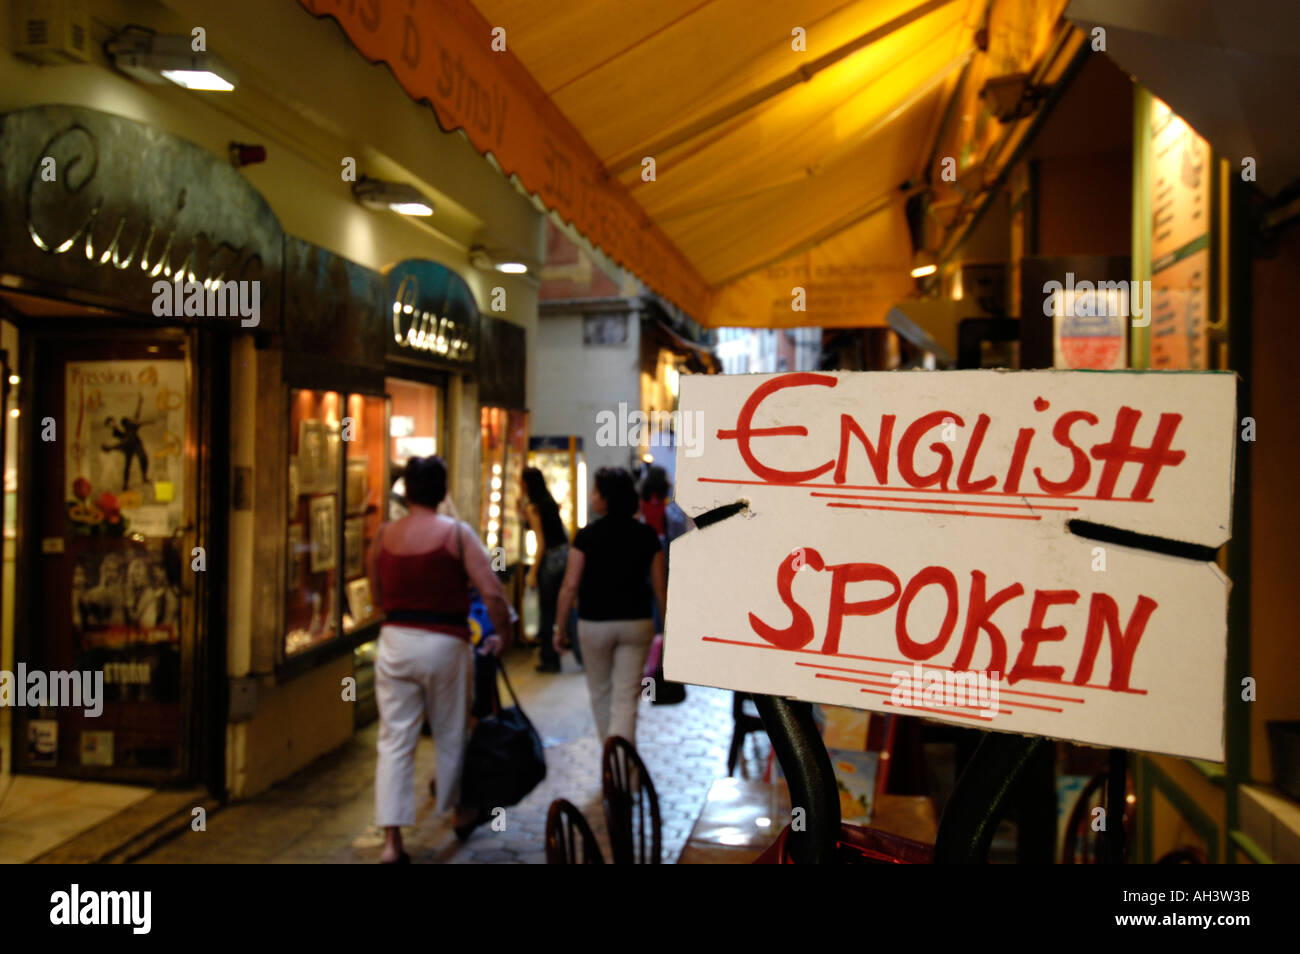 ENGLISH SPOKEN sign outside a shop, France Stock Photo